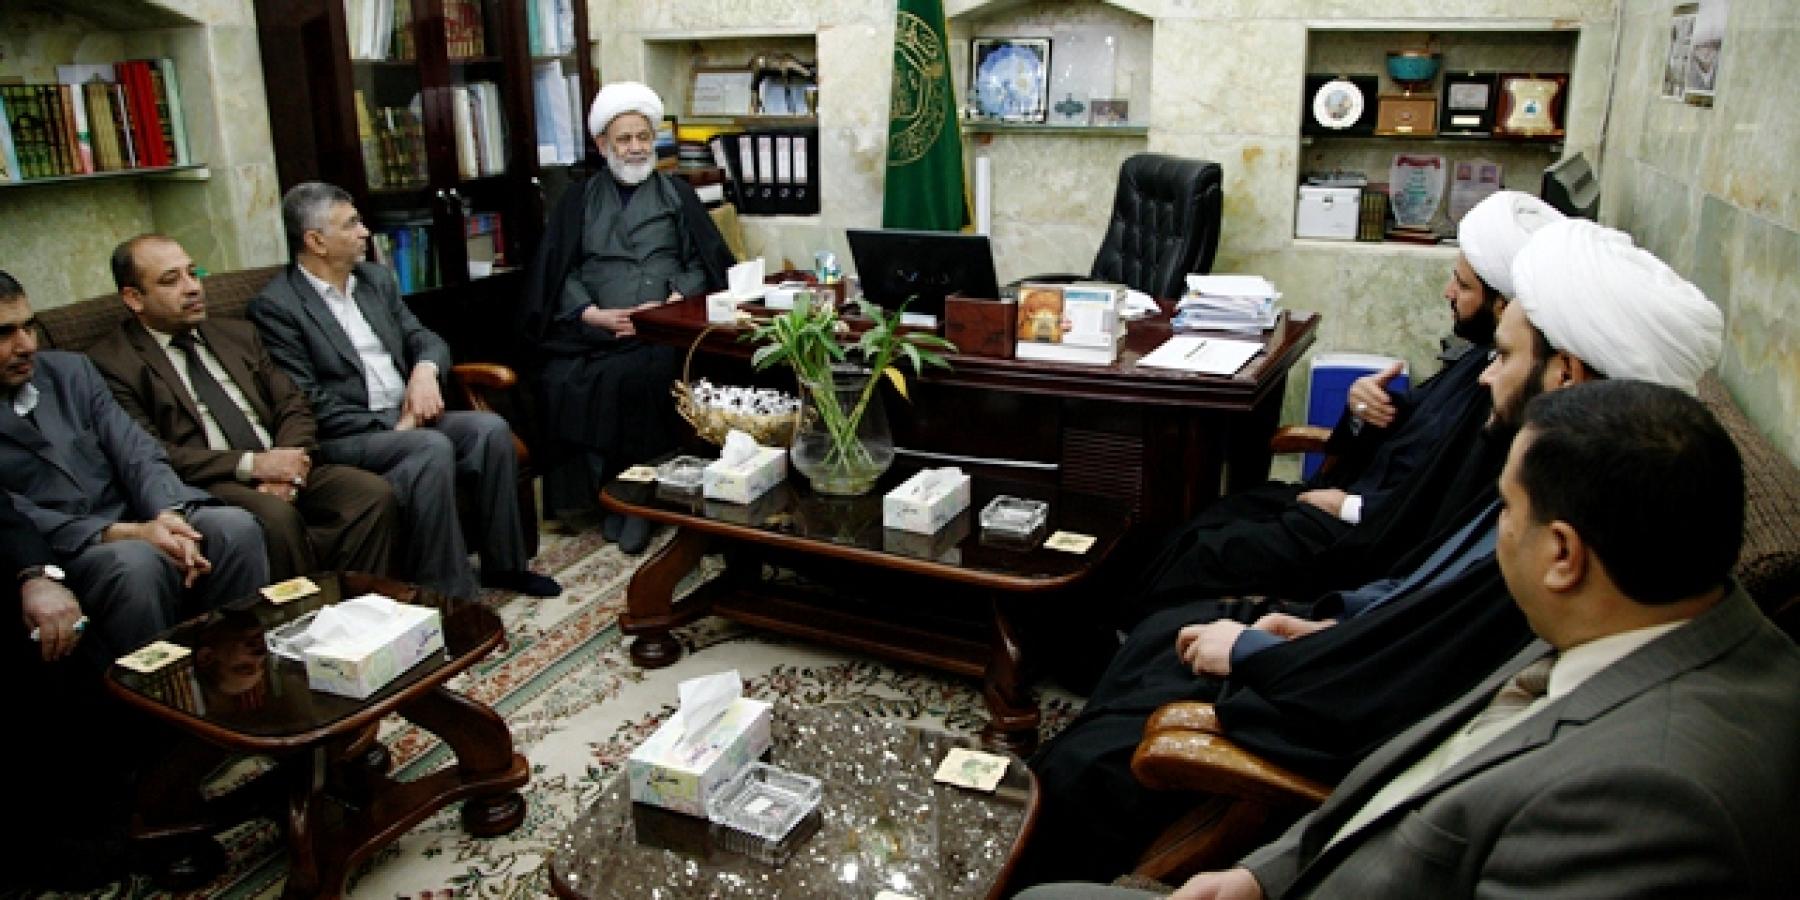 وكيل رئيس ديوان الوقف الشيعي الشيخ سامي المسعودي يناقش مع الامين العام للعتبة العلوية المقدسة موازنة عام 2015 ويطلع على التصاميم الخاصة بمشروع التوسعة